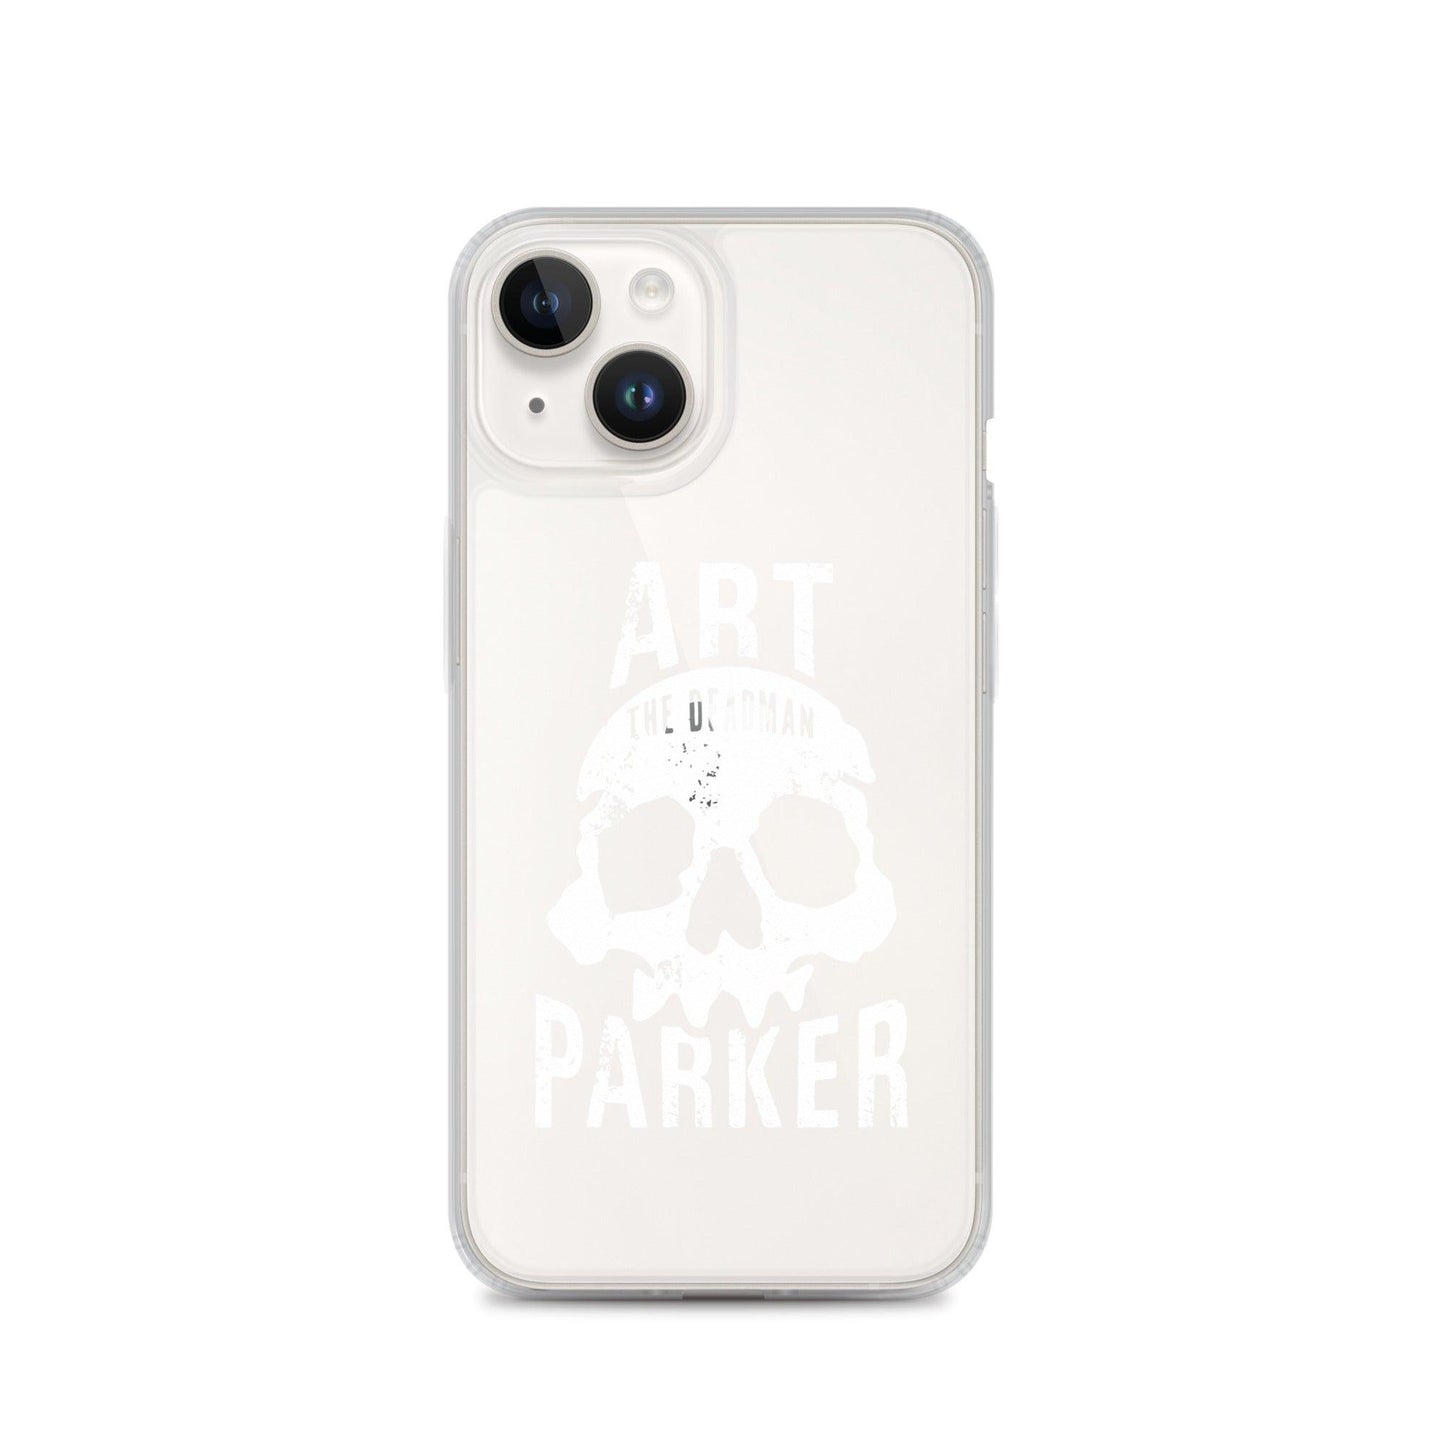 Art Parker "Deadman" iPhone® - Fan Arch